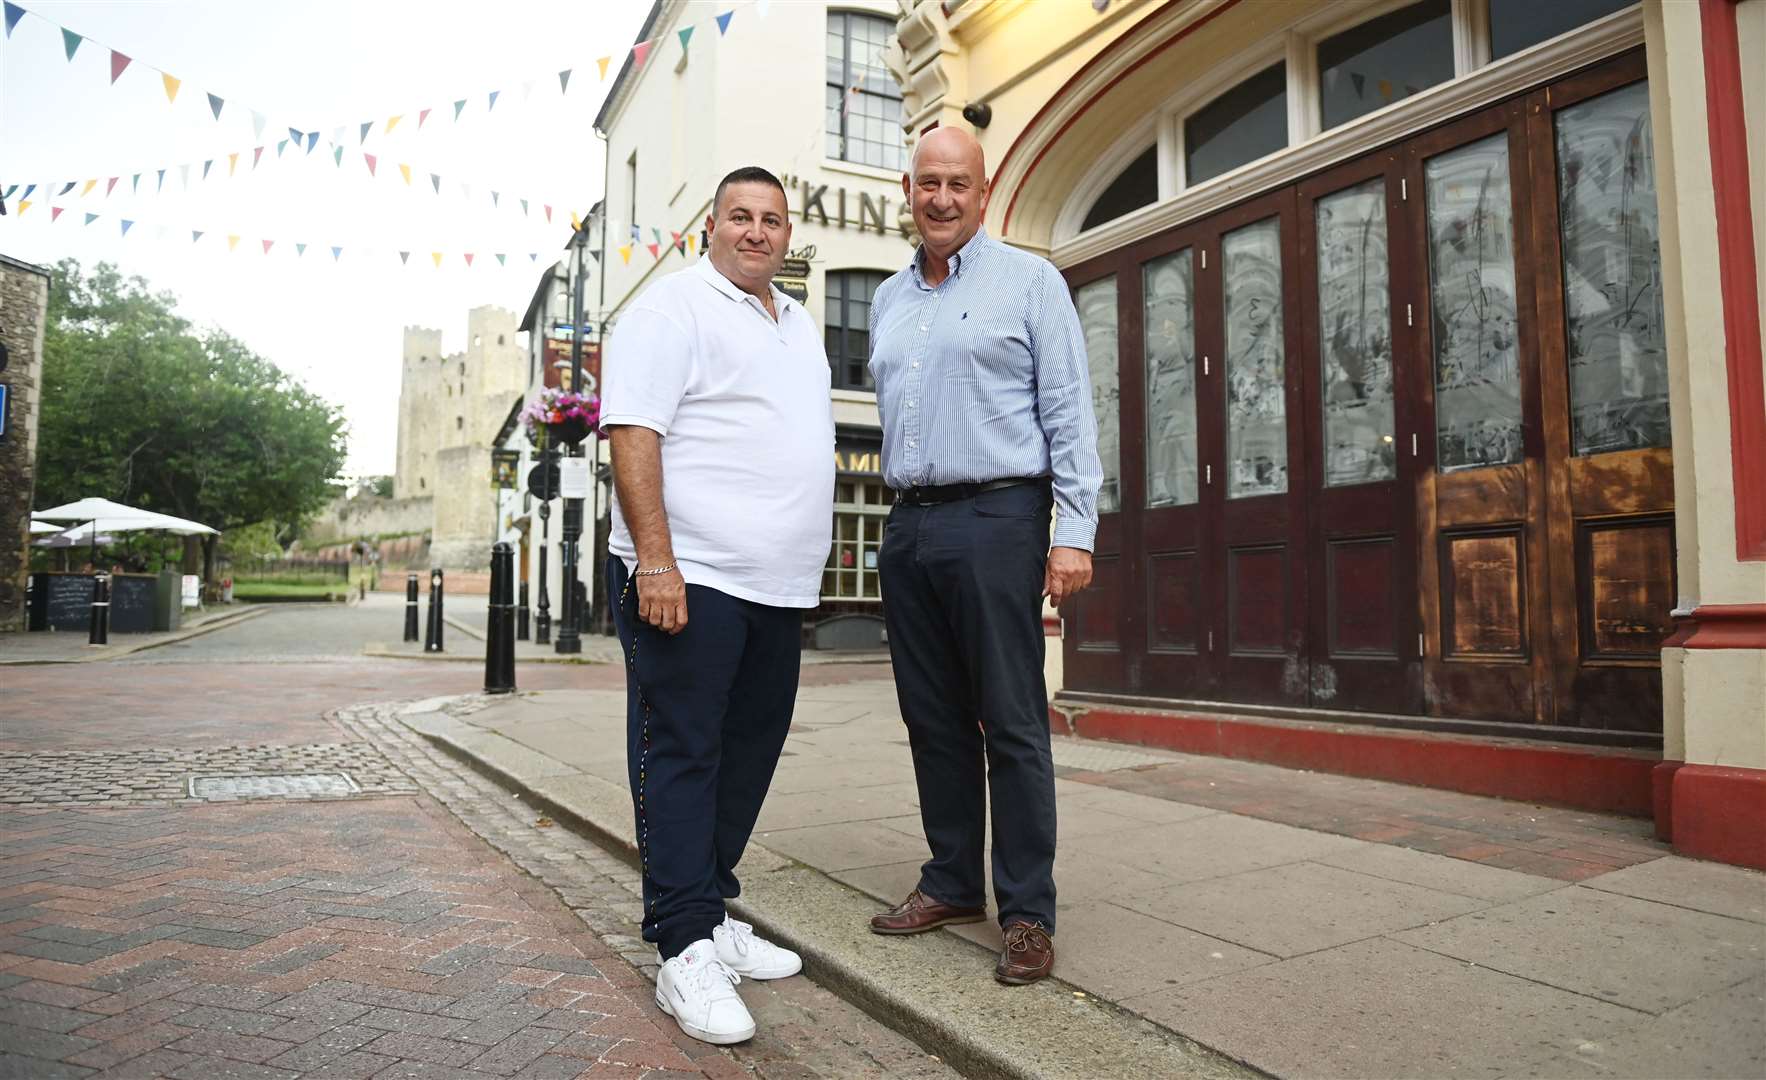 Alan Brett (left) and Steve Pennington outside their new restaurant